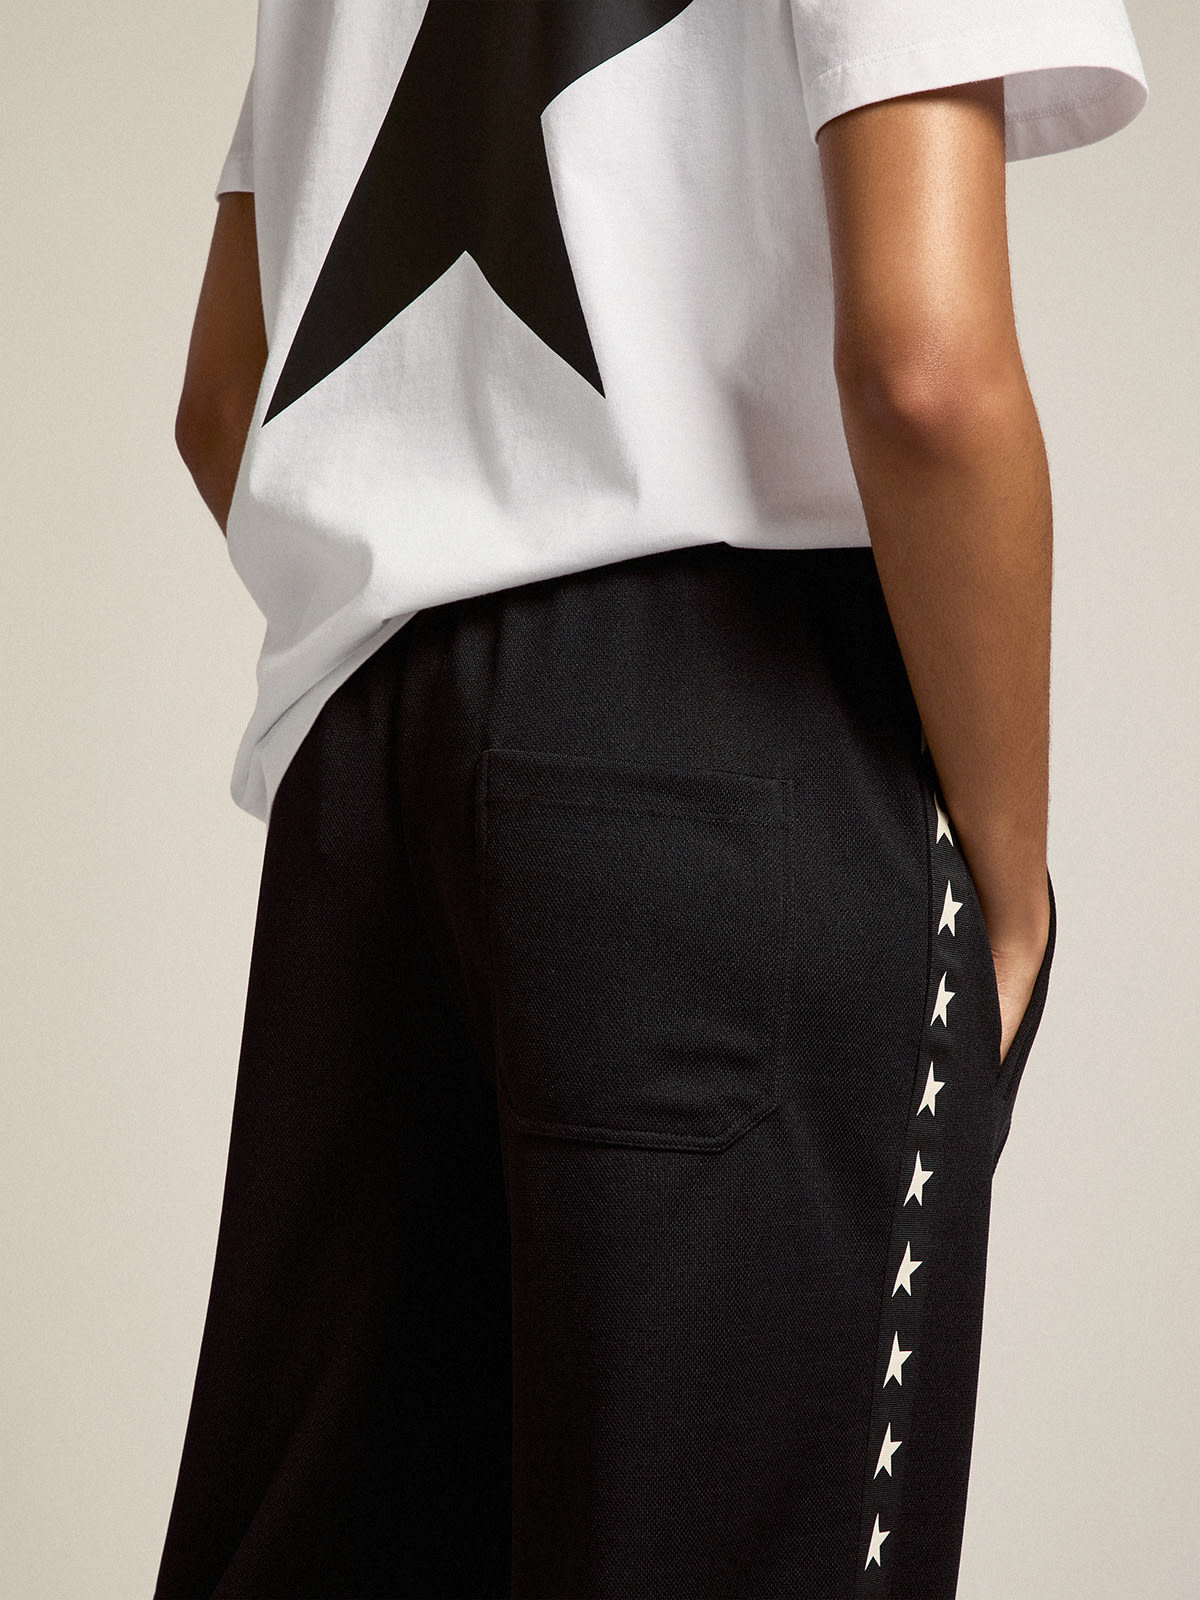 Golden Goose - Pantalón jogger de mujer en color negro con estrellas blancas en los lados in 